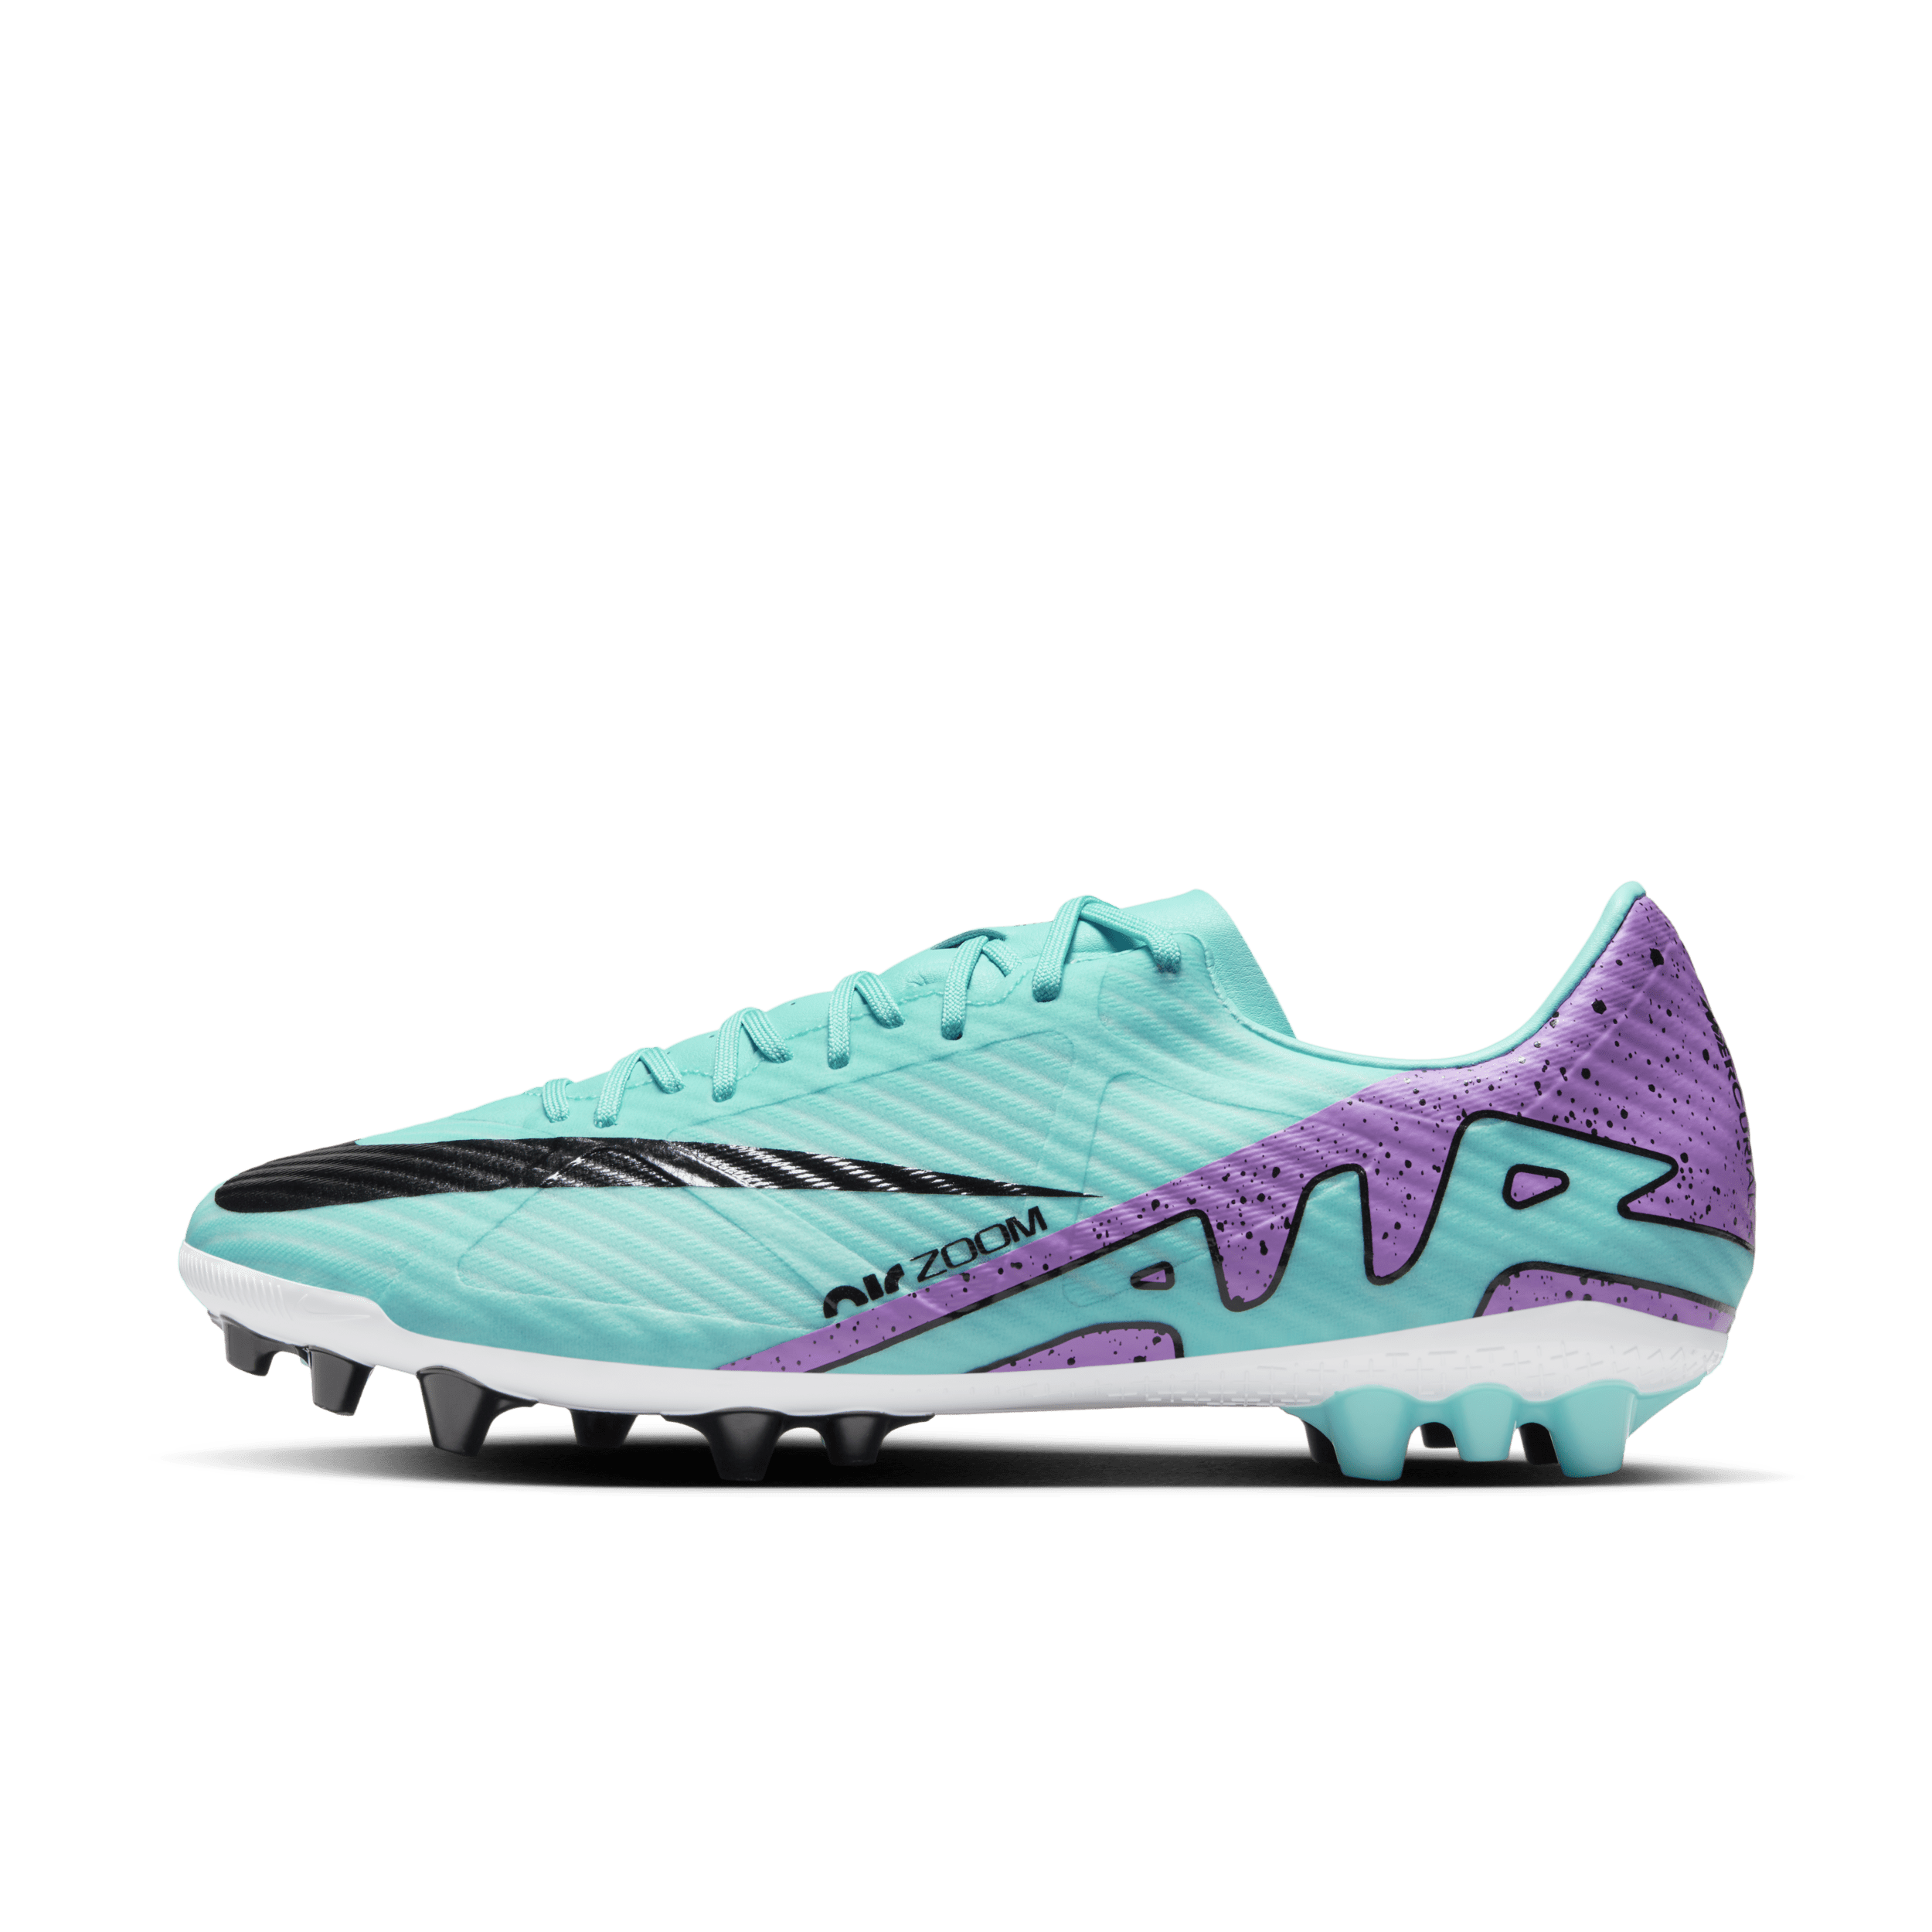 Nike Mercurial Vapor 15 Academy-fodboldstøvler (low-top) til kunstgræs - grøn